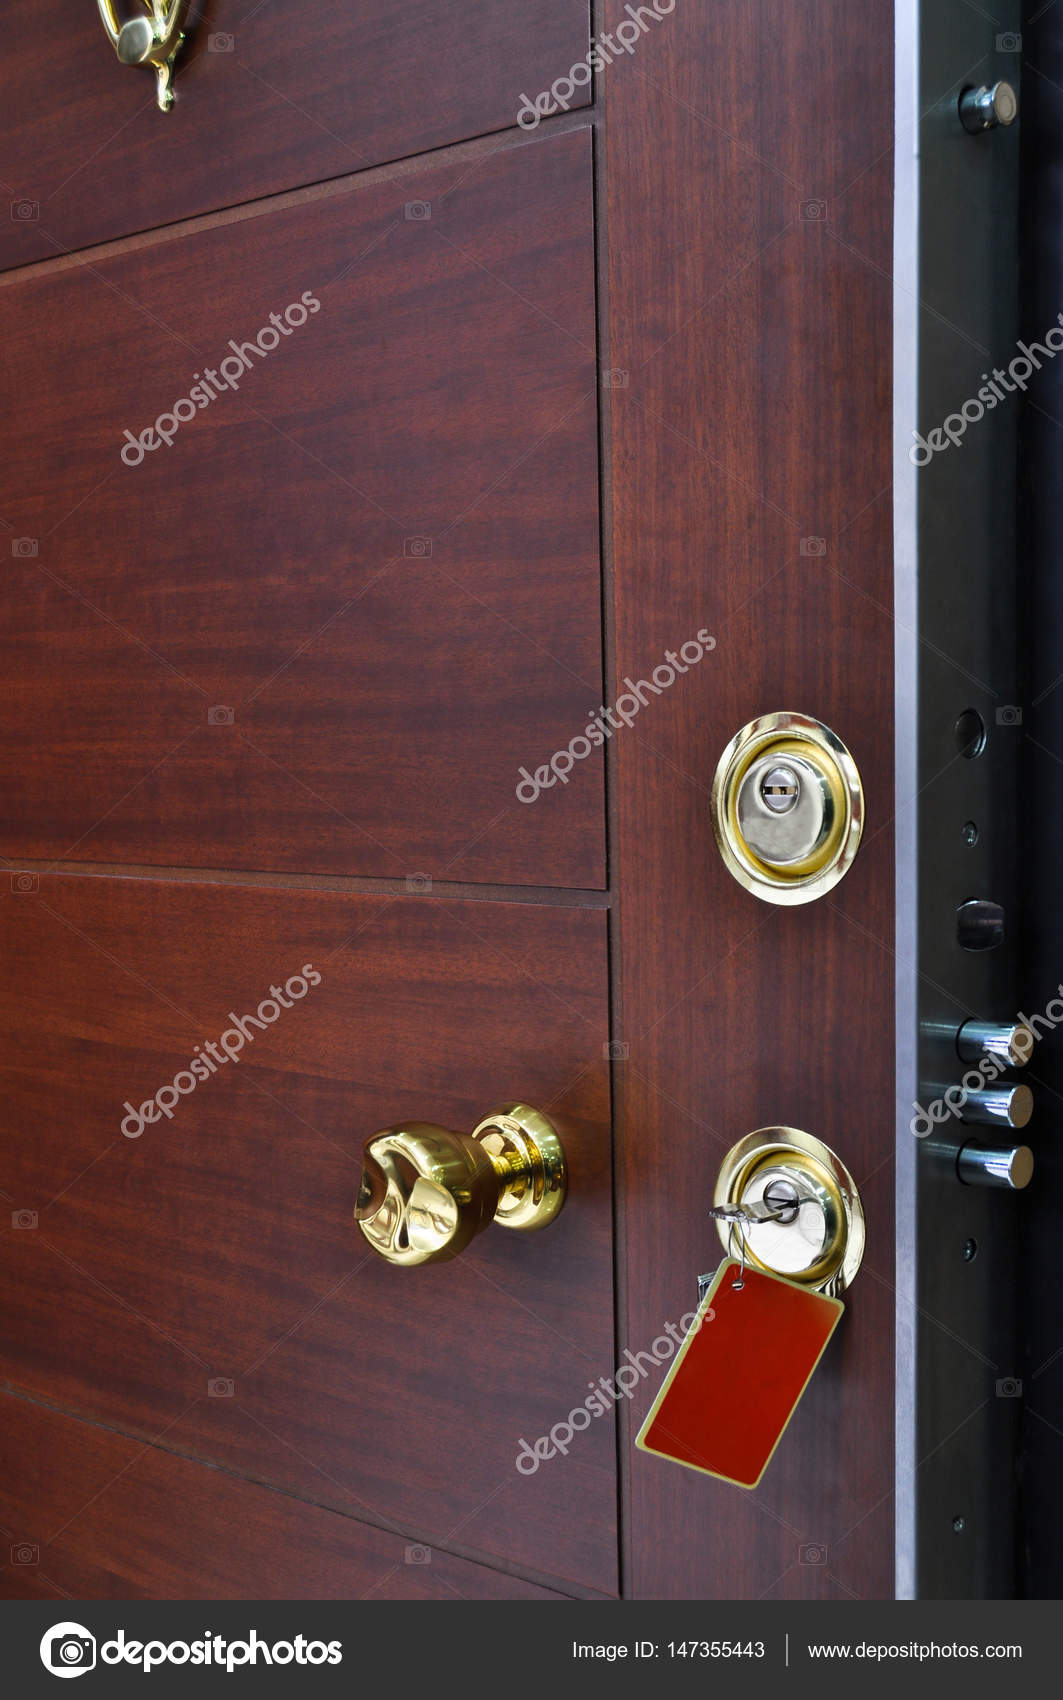 Cerradura puerta fotos de stock, imágenes de Cerradura puerta sin royalties